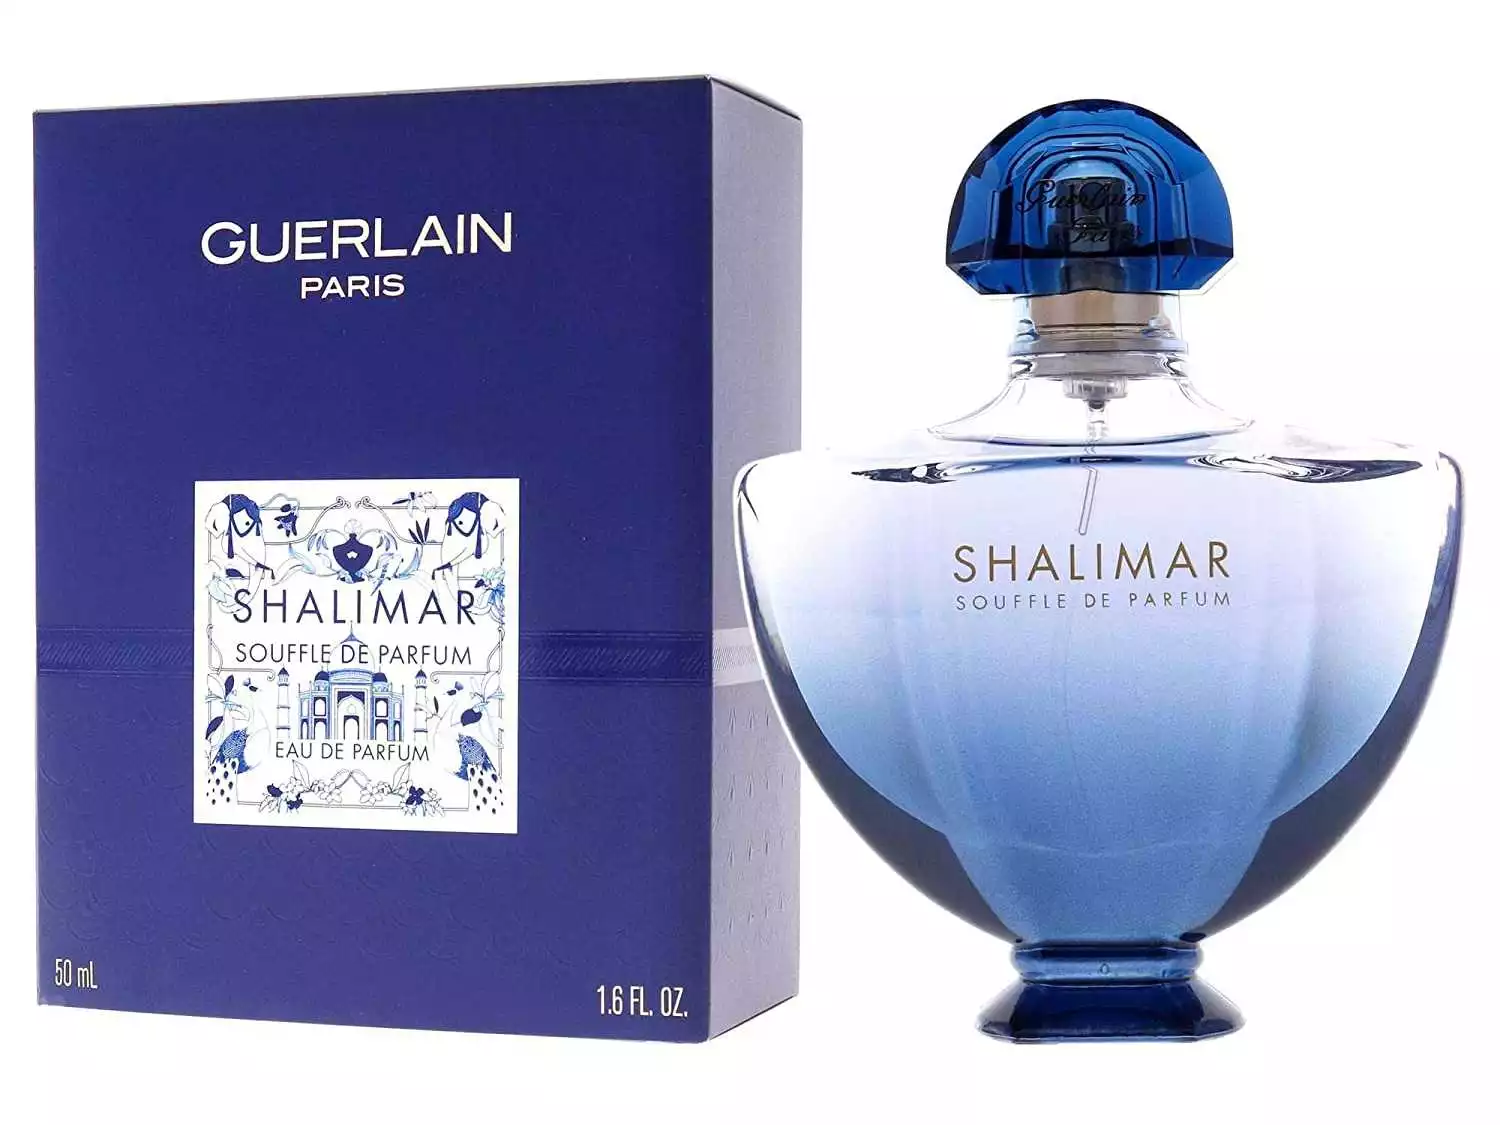 Shalimar – Souffle de Parfum